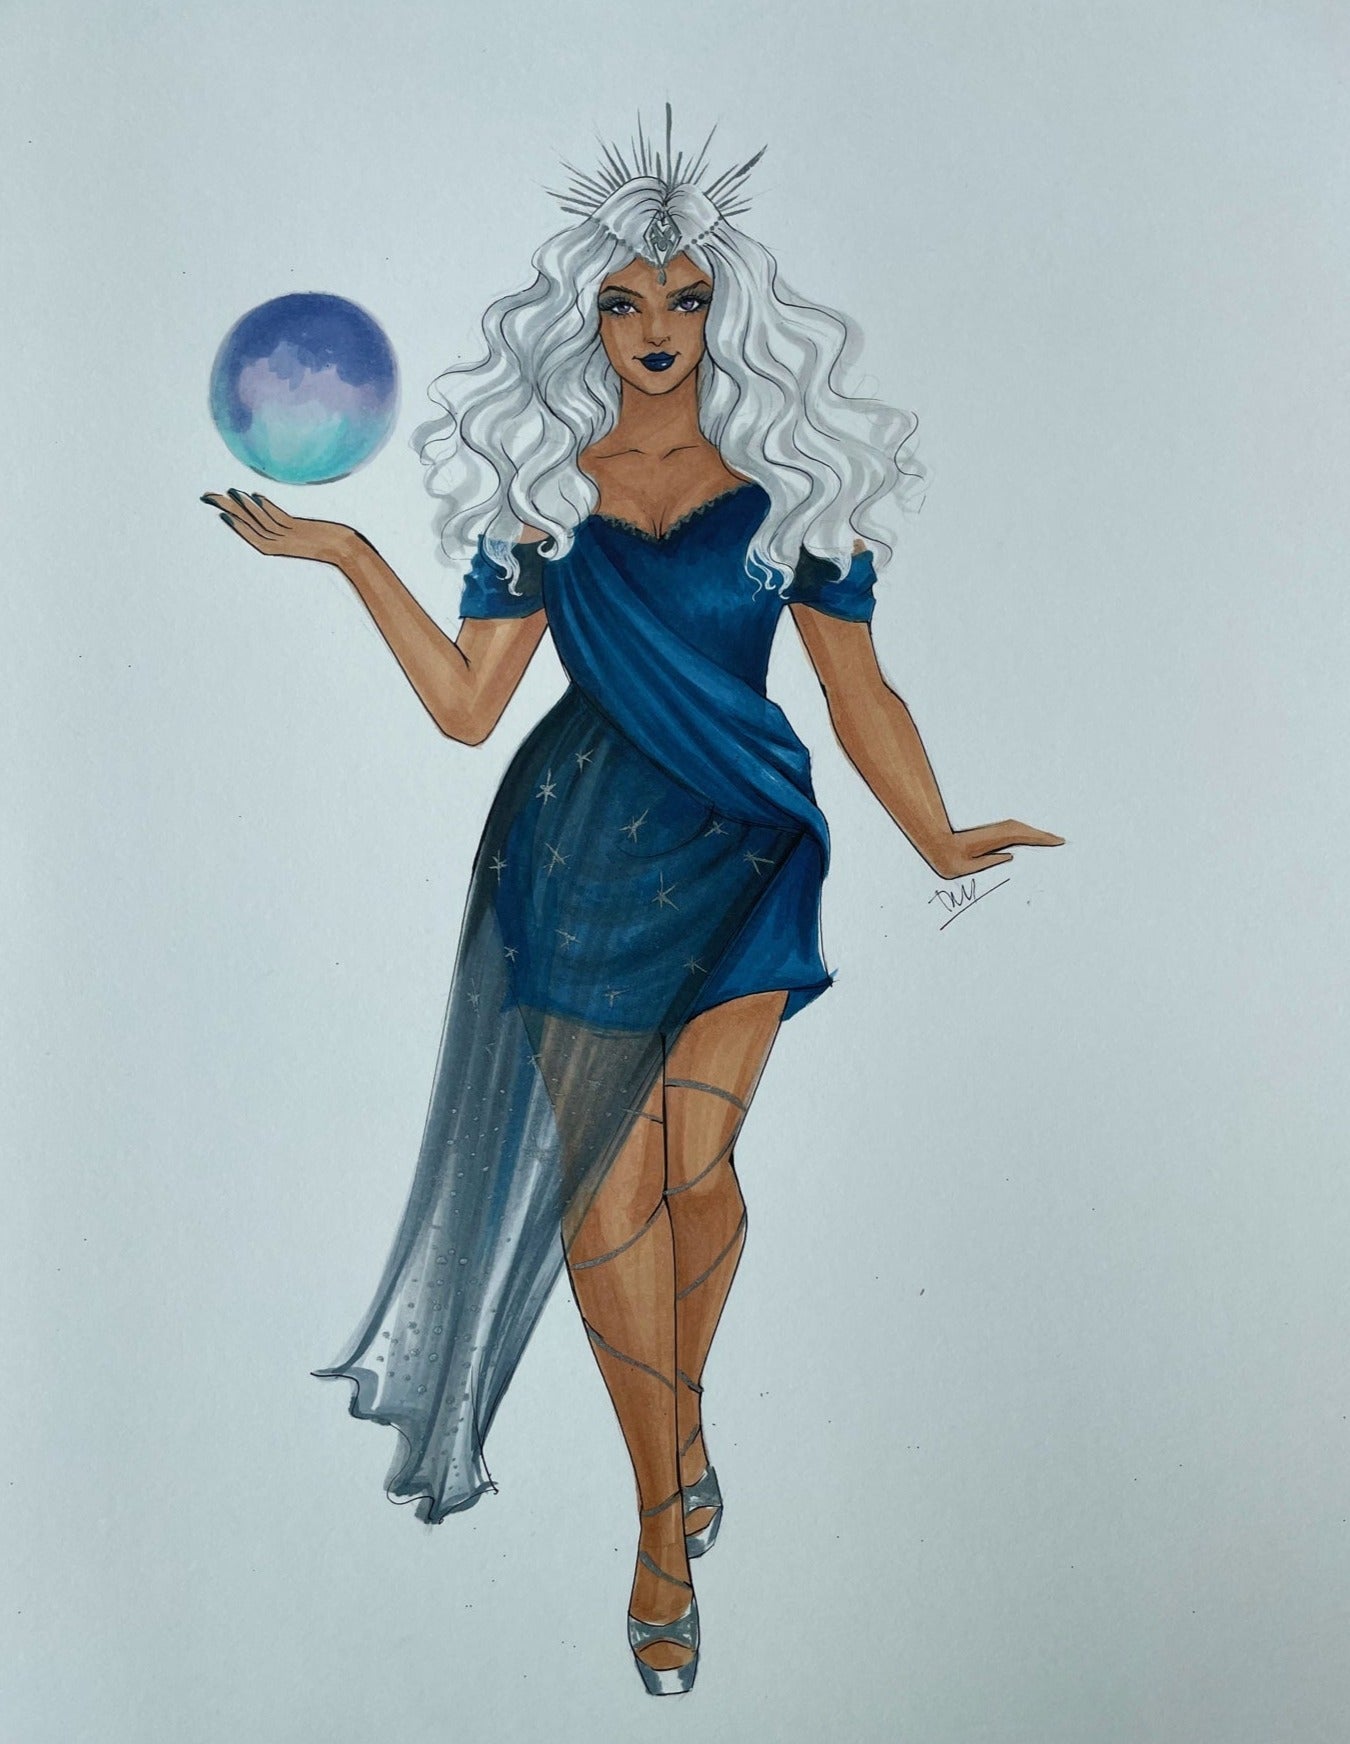 selene goddess of the moon myth